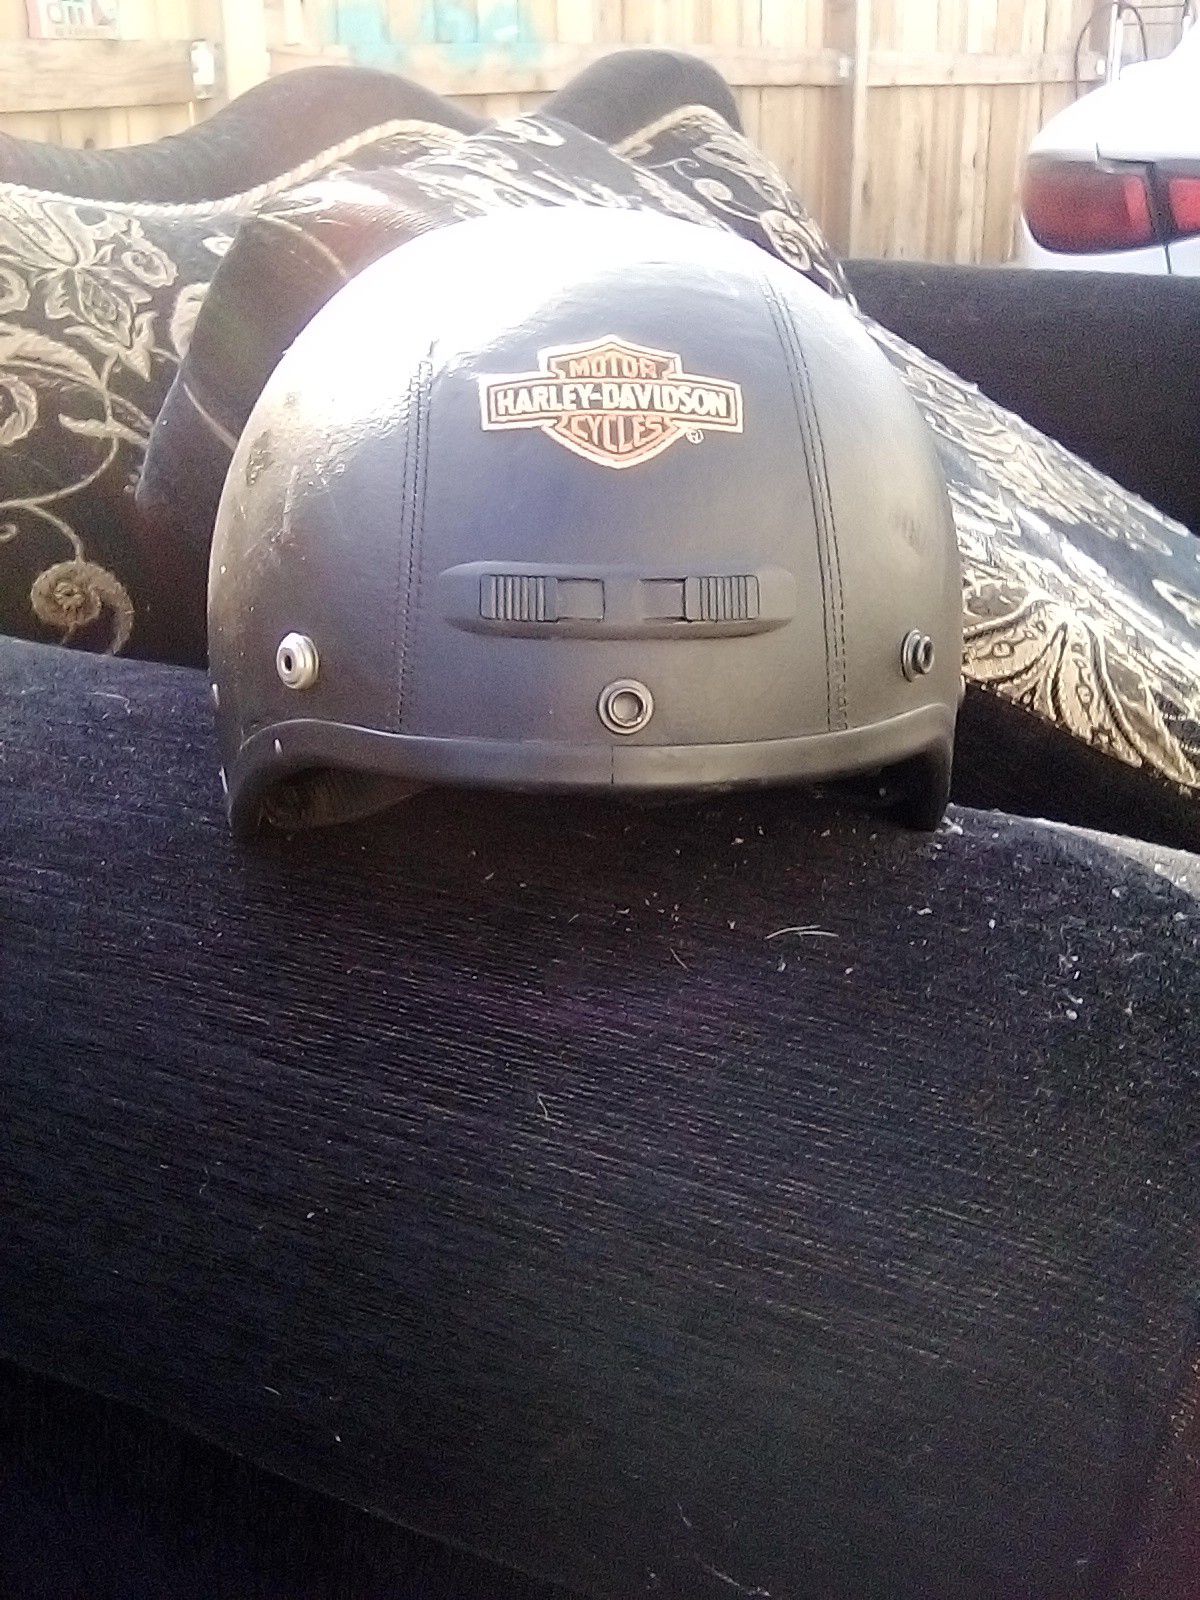 Harley Davidson motorcycle helmet